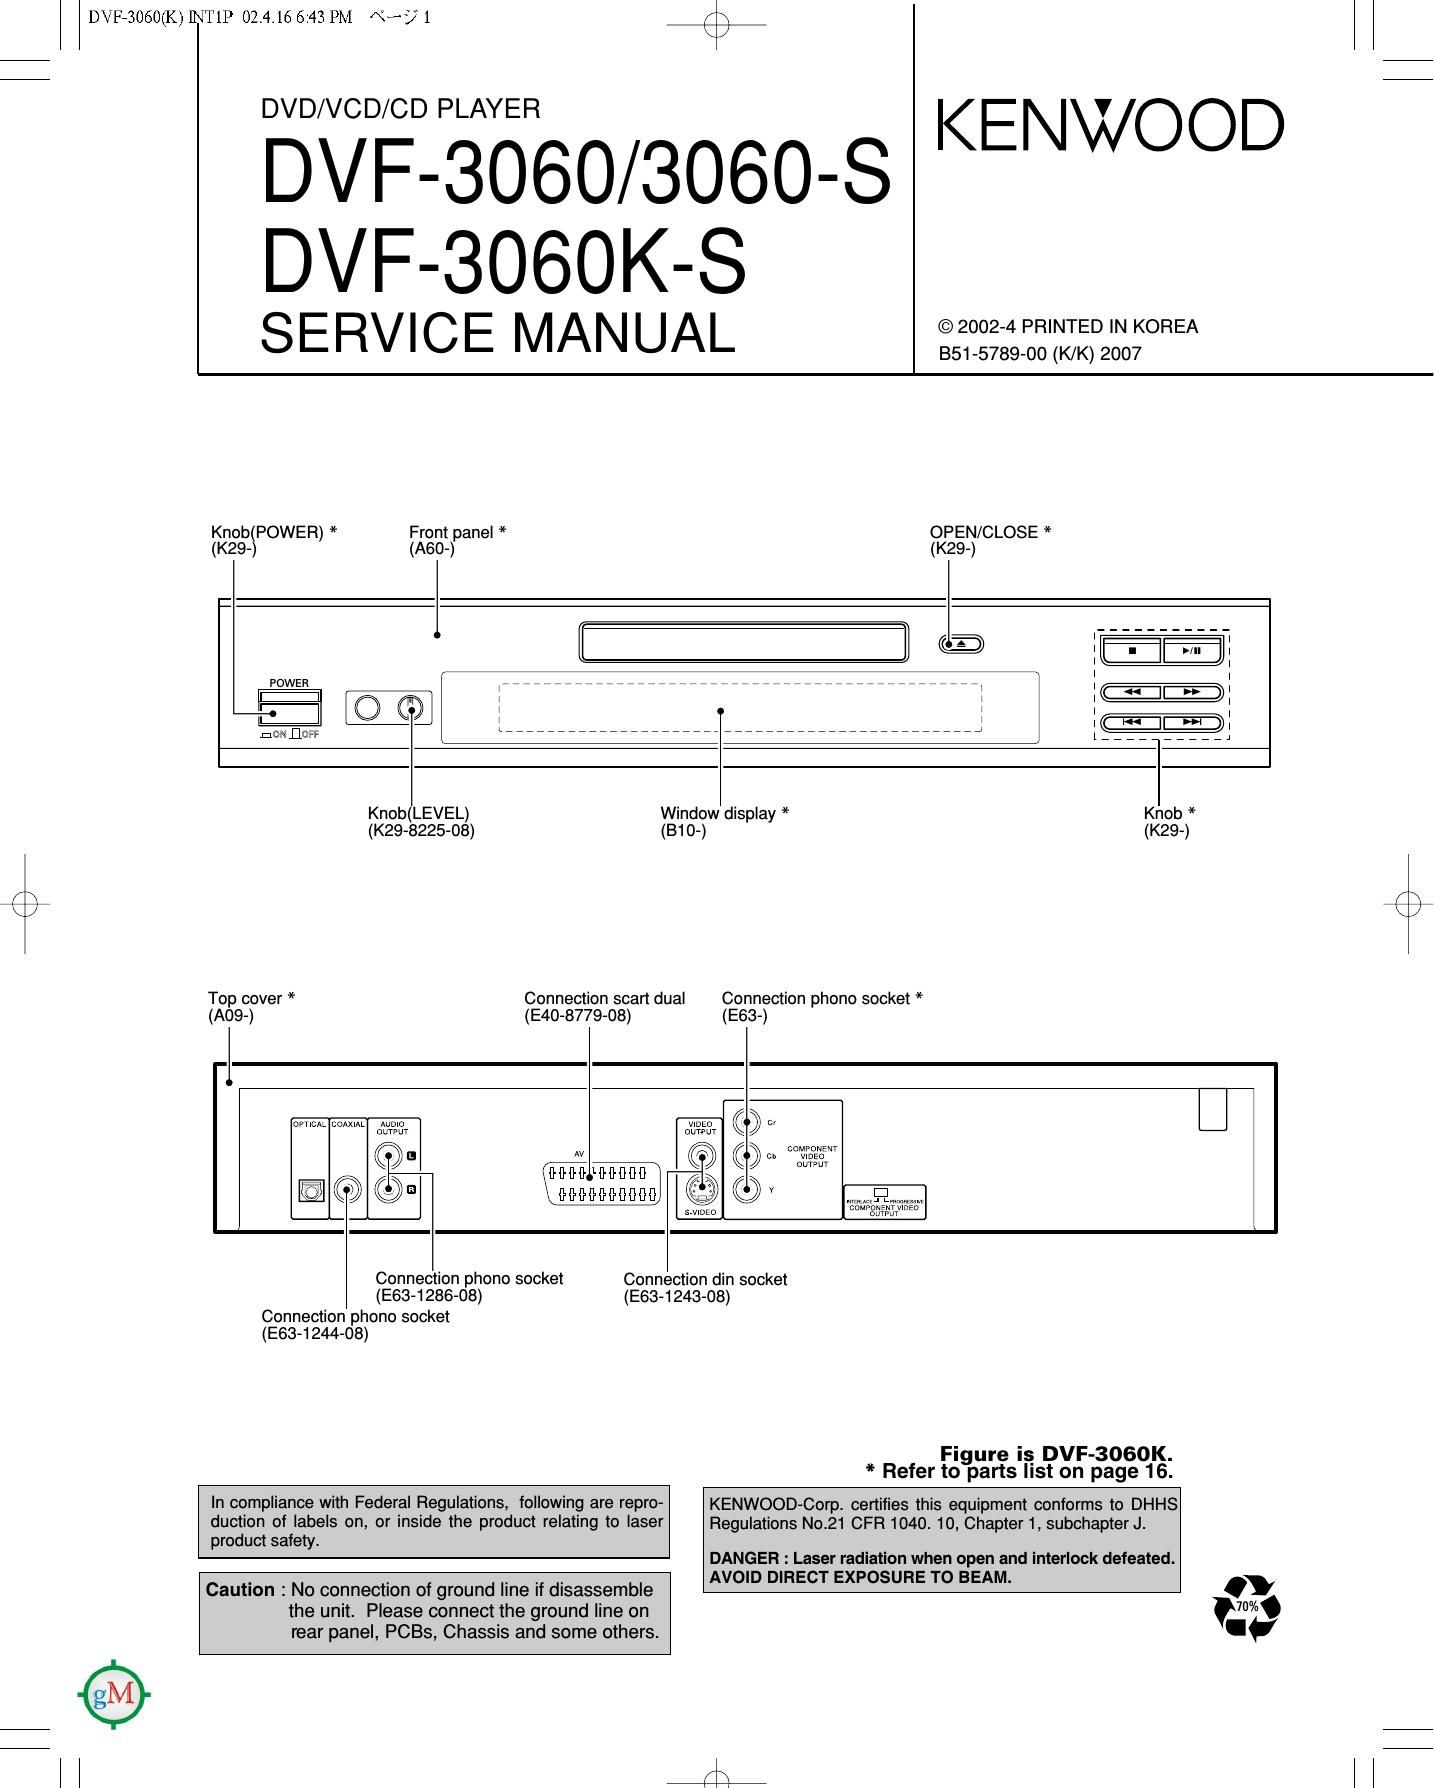 Kenwood DVF 3060 Service Manual